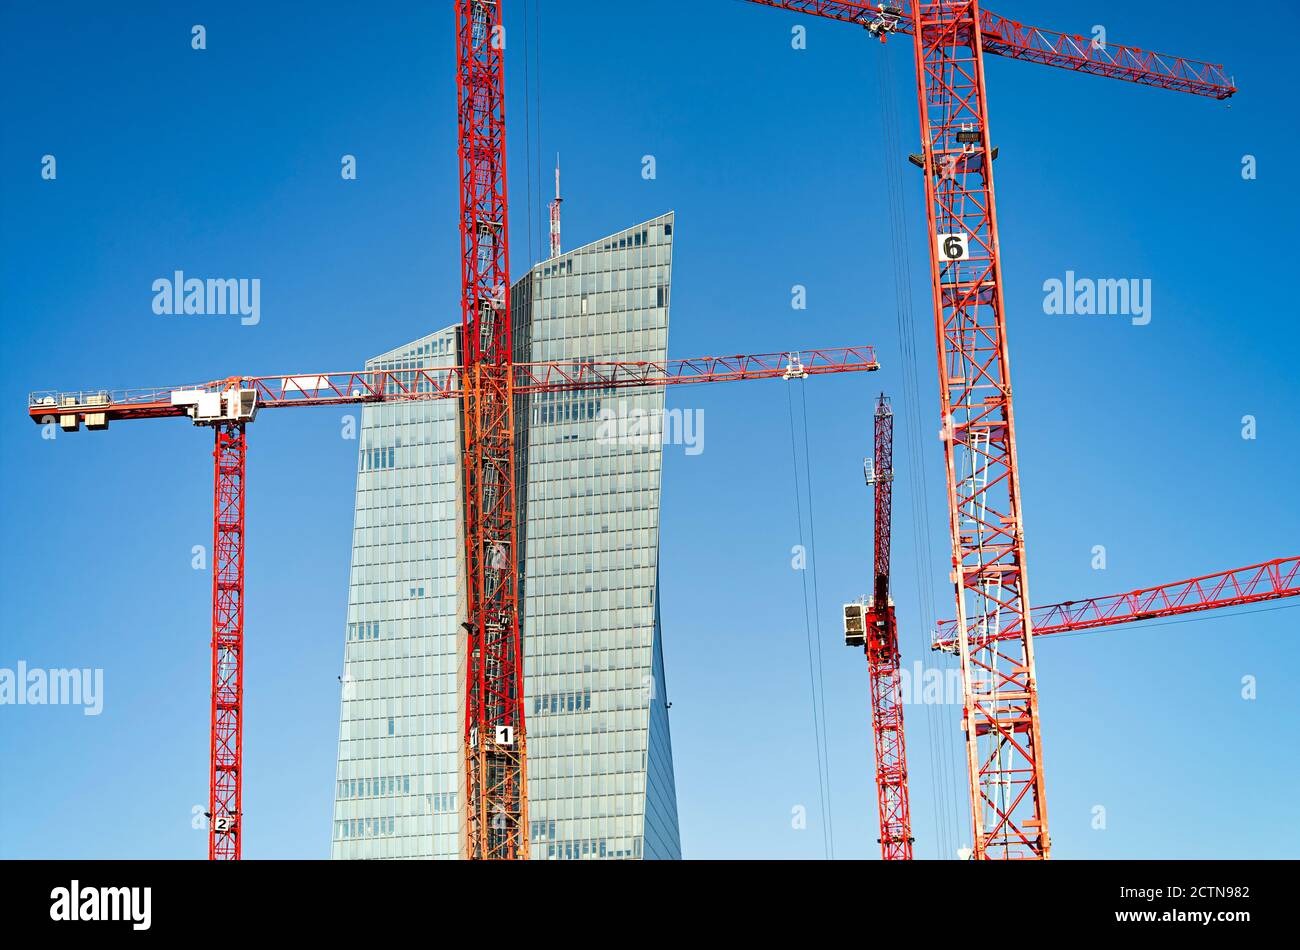 Banque centrale européenne avec grues de construction au premier plan Banque D'Images